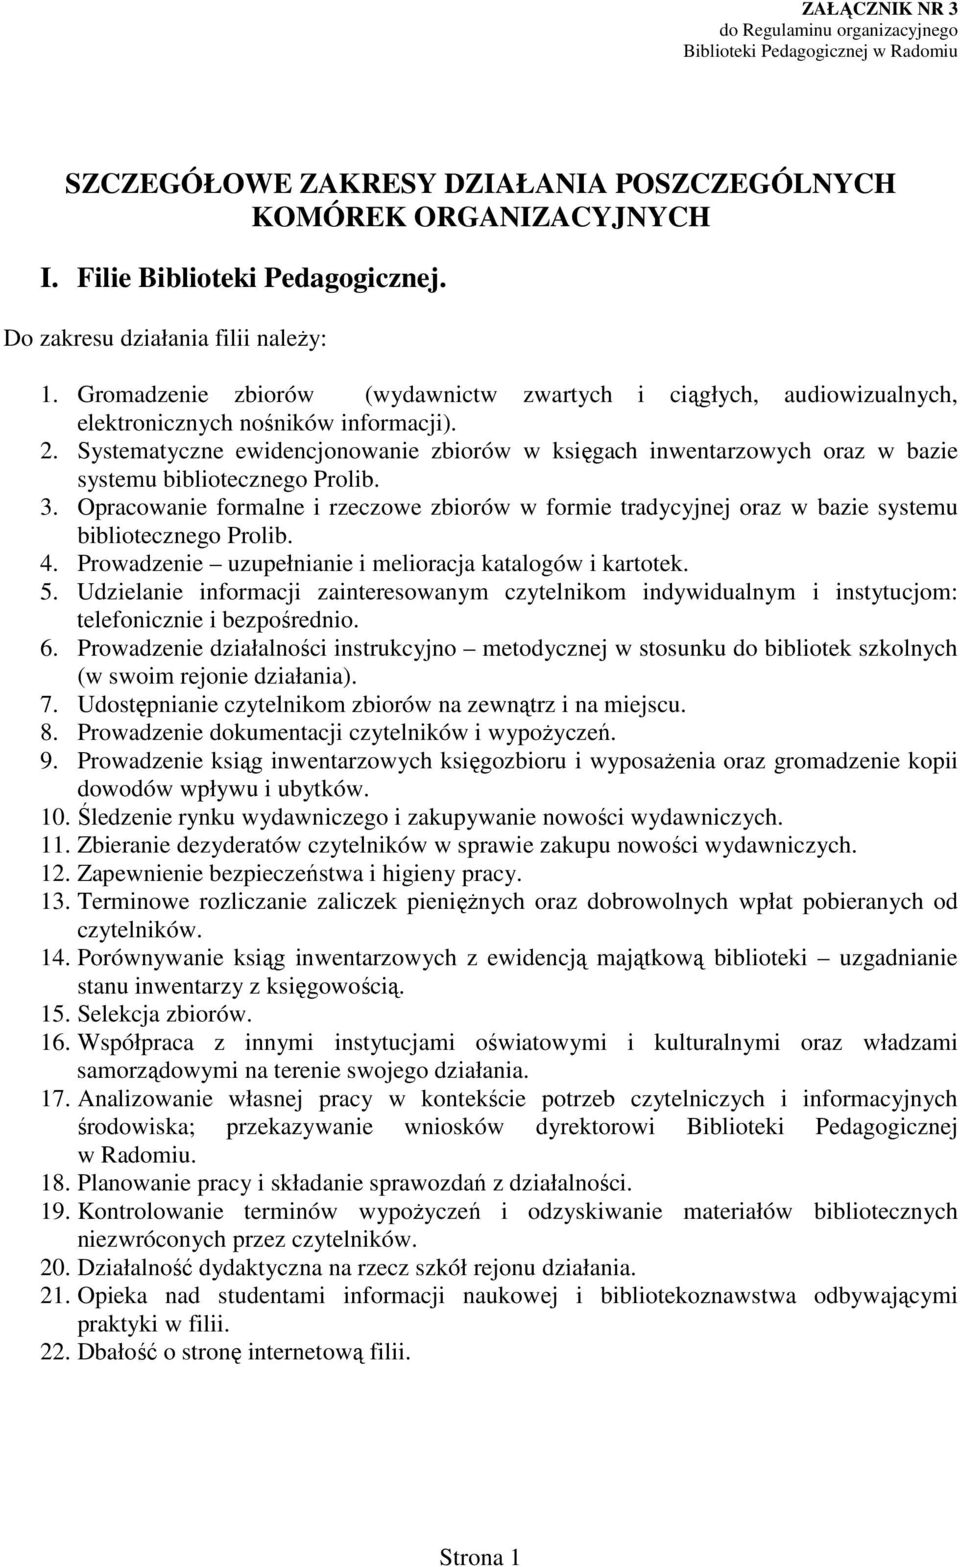 Systematyczne ewidencjonowanie zbiorów w księgach inwentarzowych oraz w bazie systemu bibliotecznego Prolib. 3.